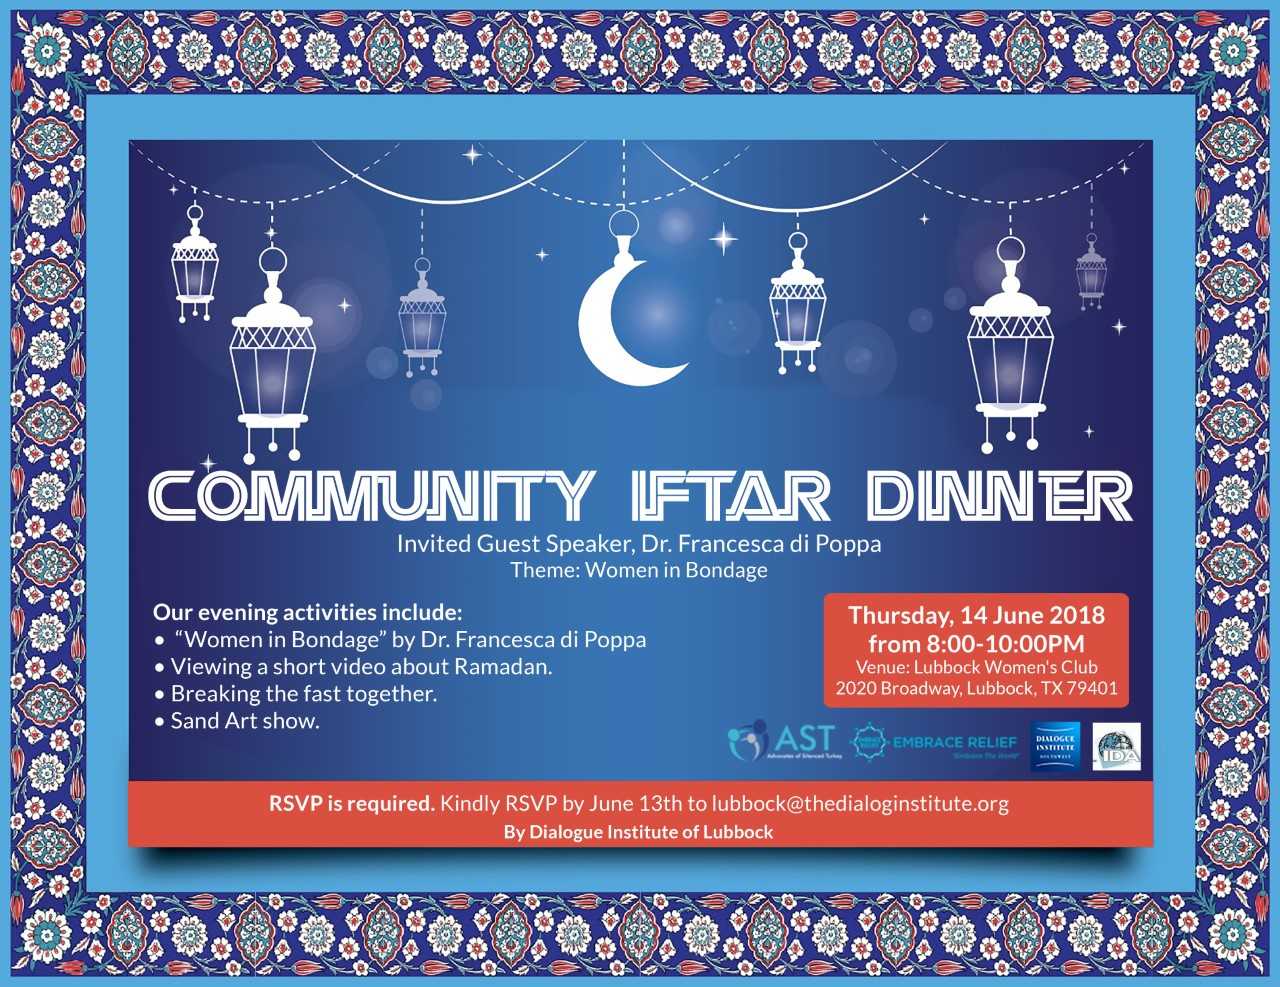 Community Iftar Dinner Flyer